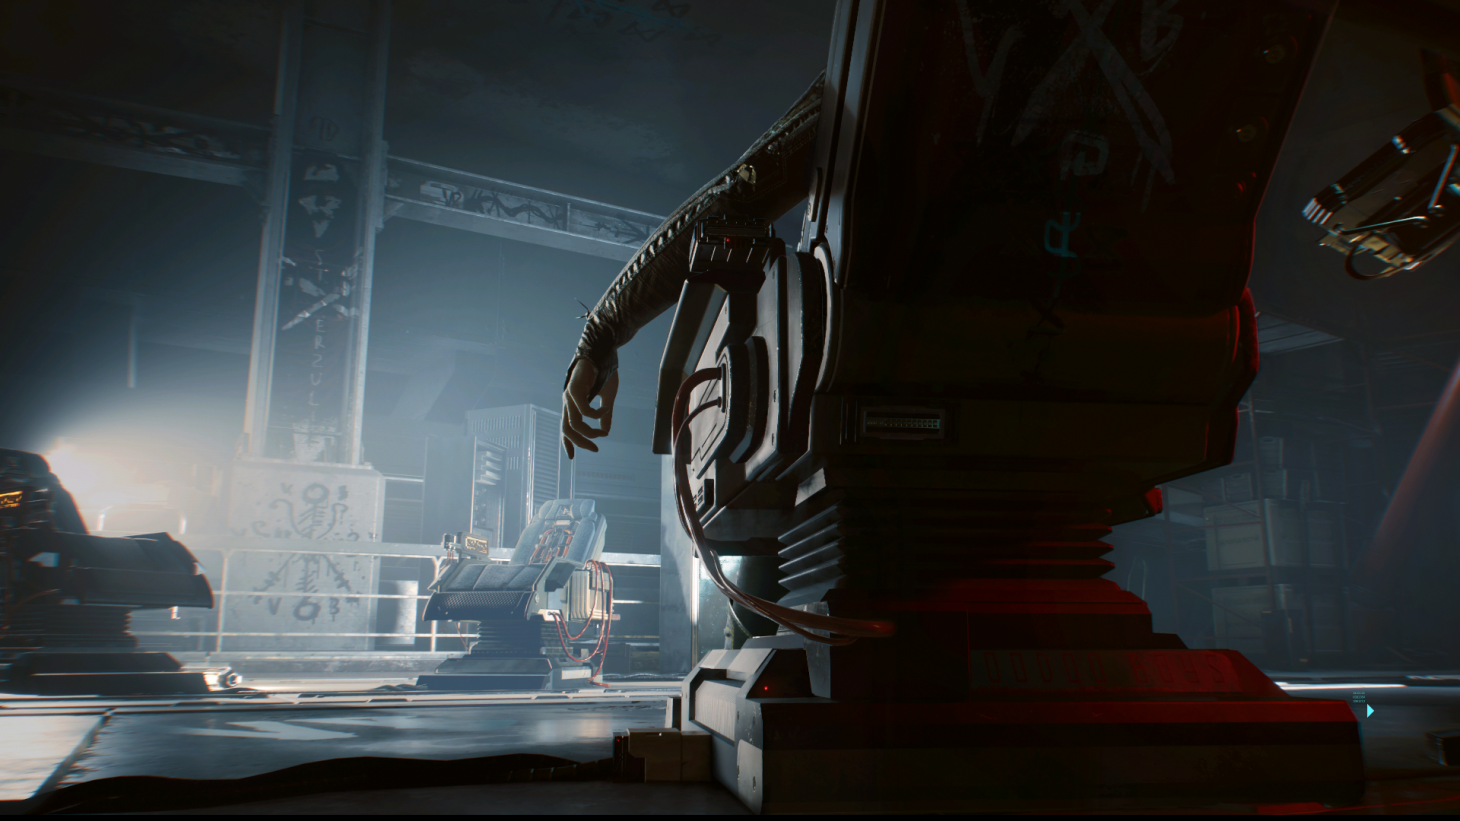 Cyberpunk 2077 está disponível para PS4 na PlayStation Store